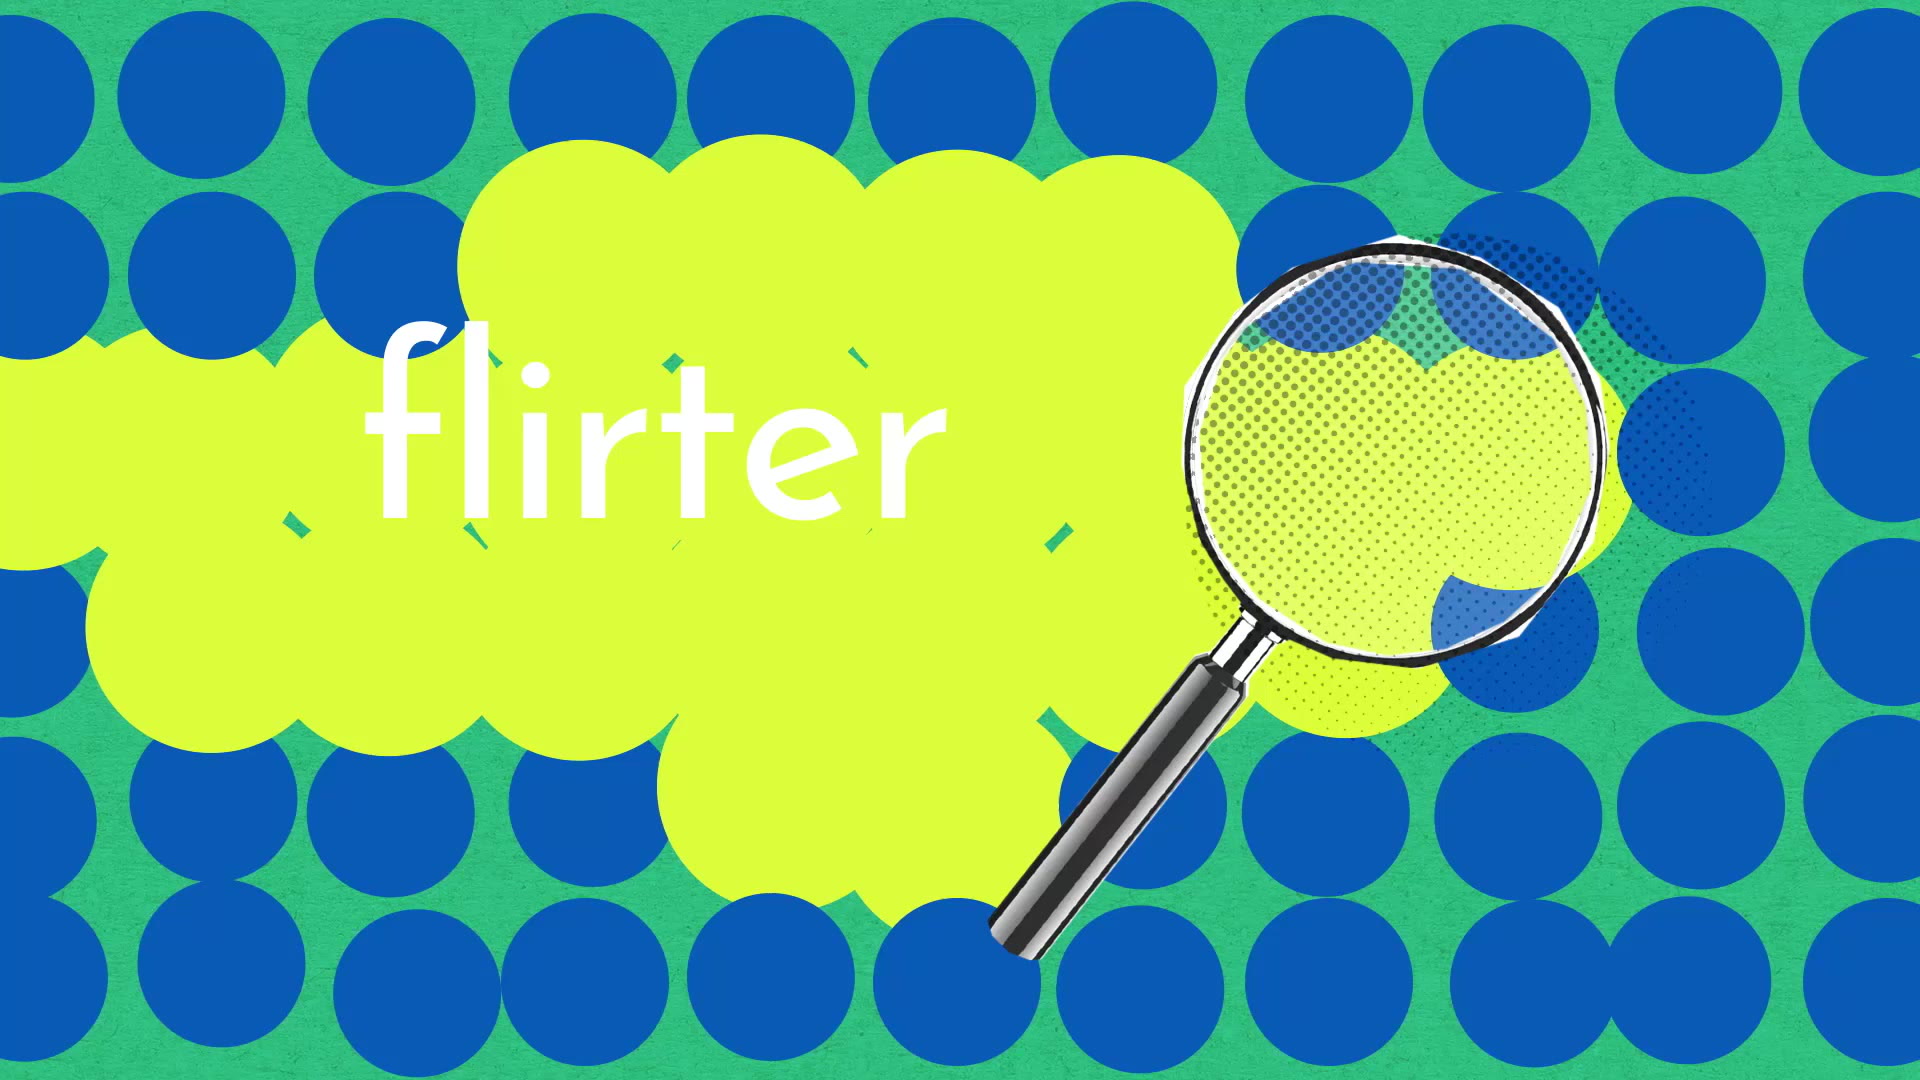 Flirter : définition, synonyme et conjugaison de flirter en français | TV5MONDE - Langue Française